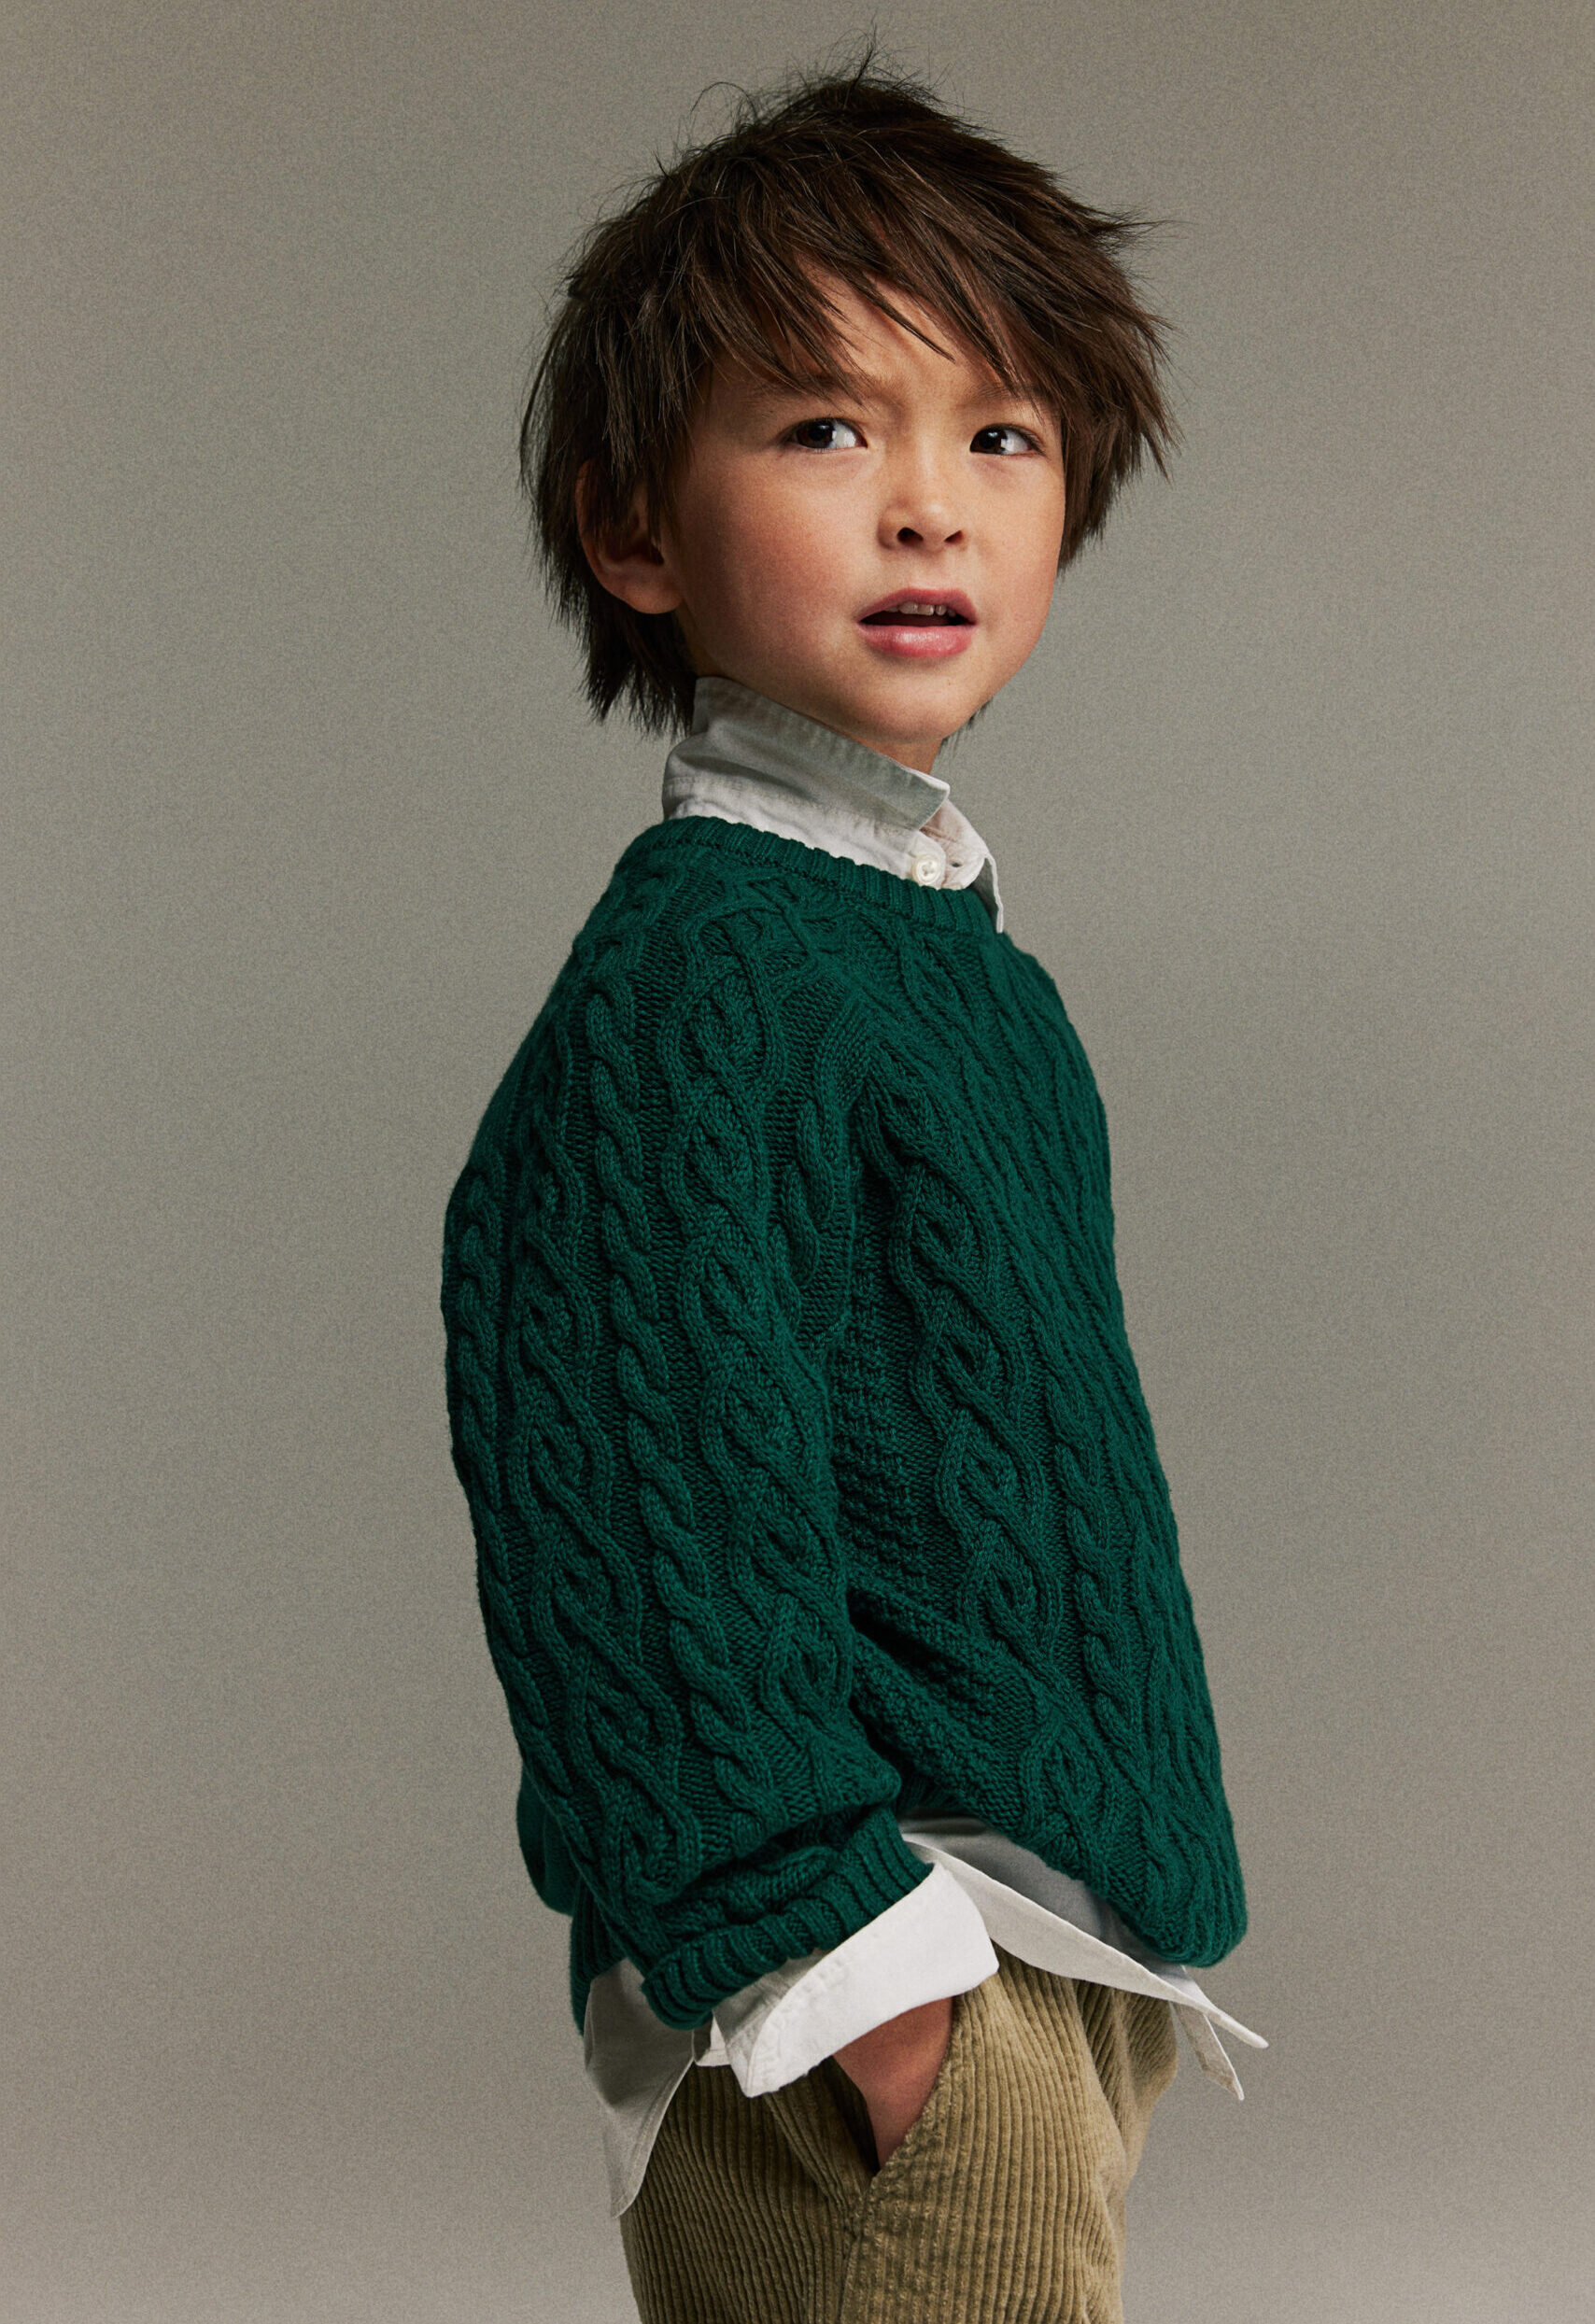 Boy wearing a dark green knit sweater